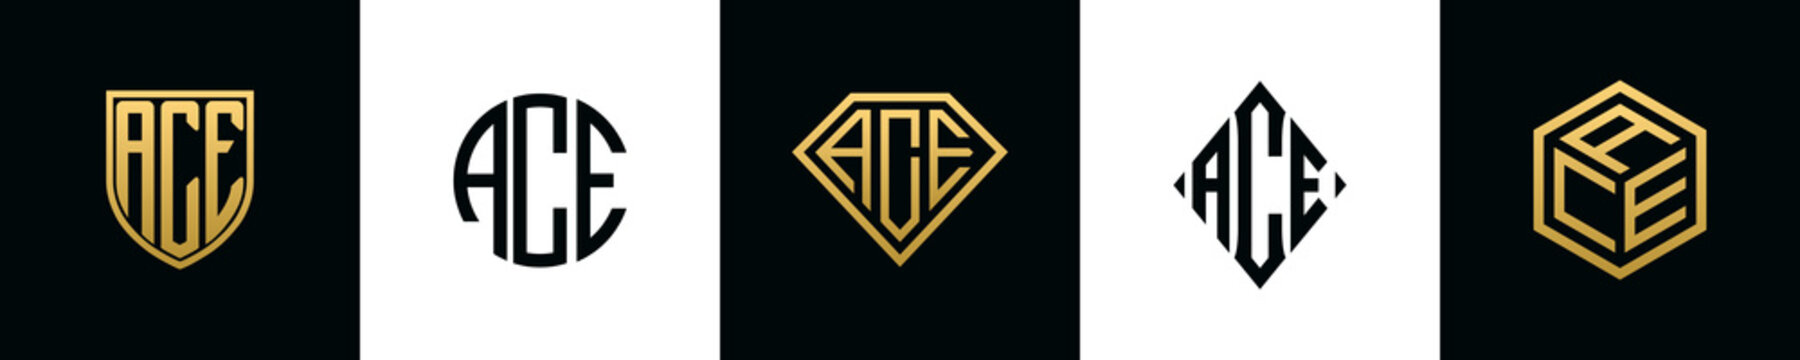 Initial letters ACE logo designs Bundle